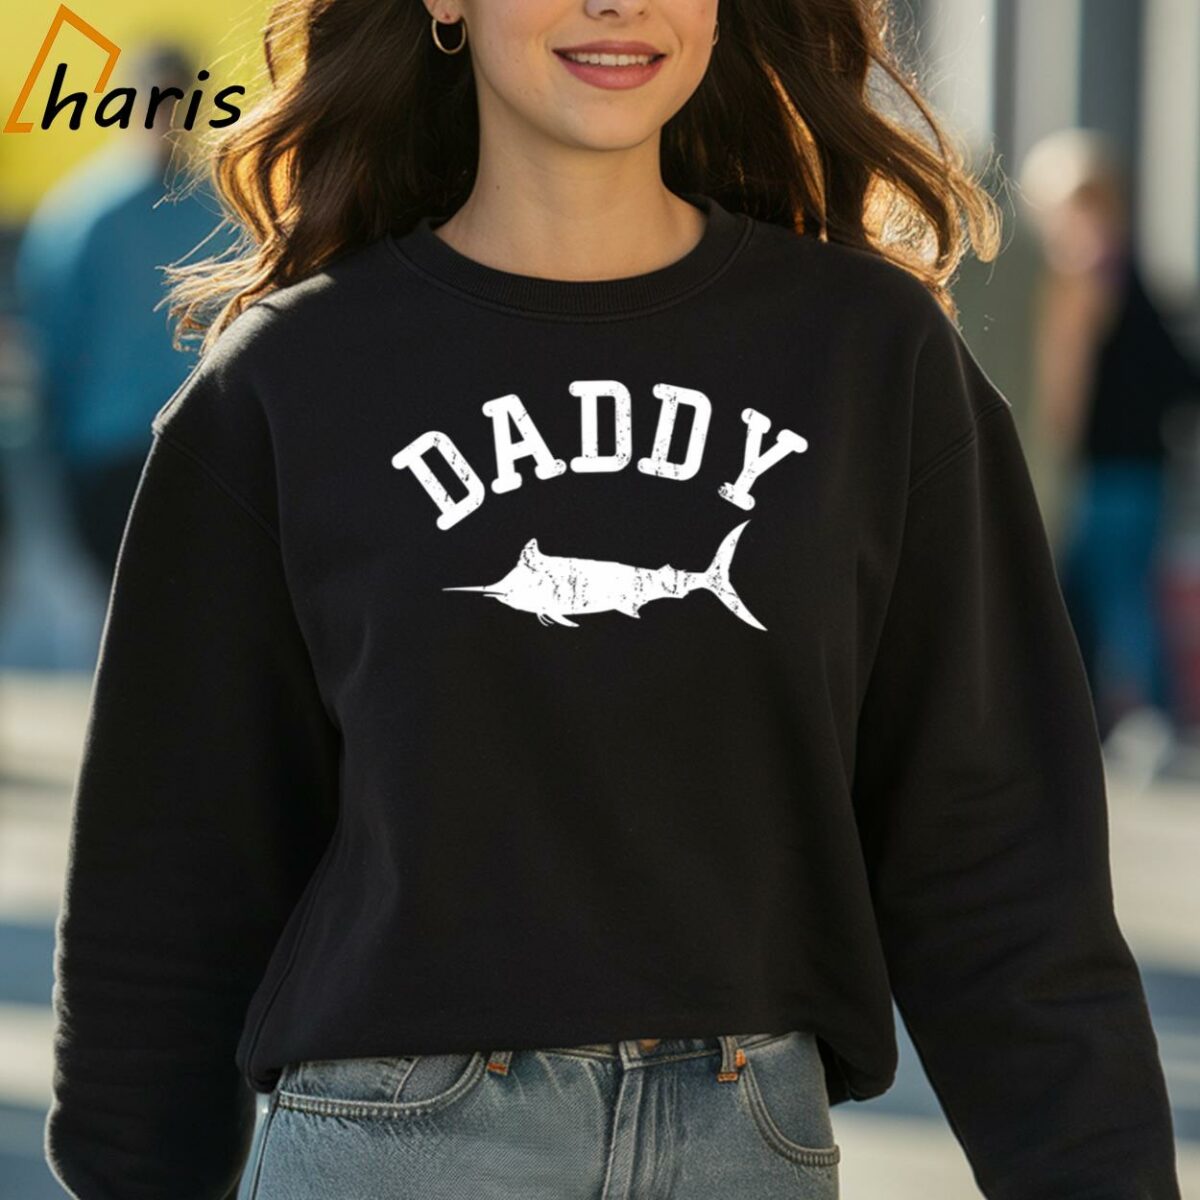 Daddy Marlin Vintage T shirt Gift Ideas For Dad 3 sweatshirt